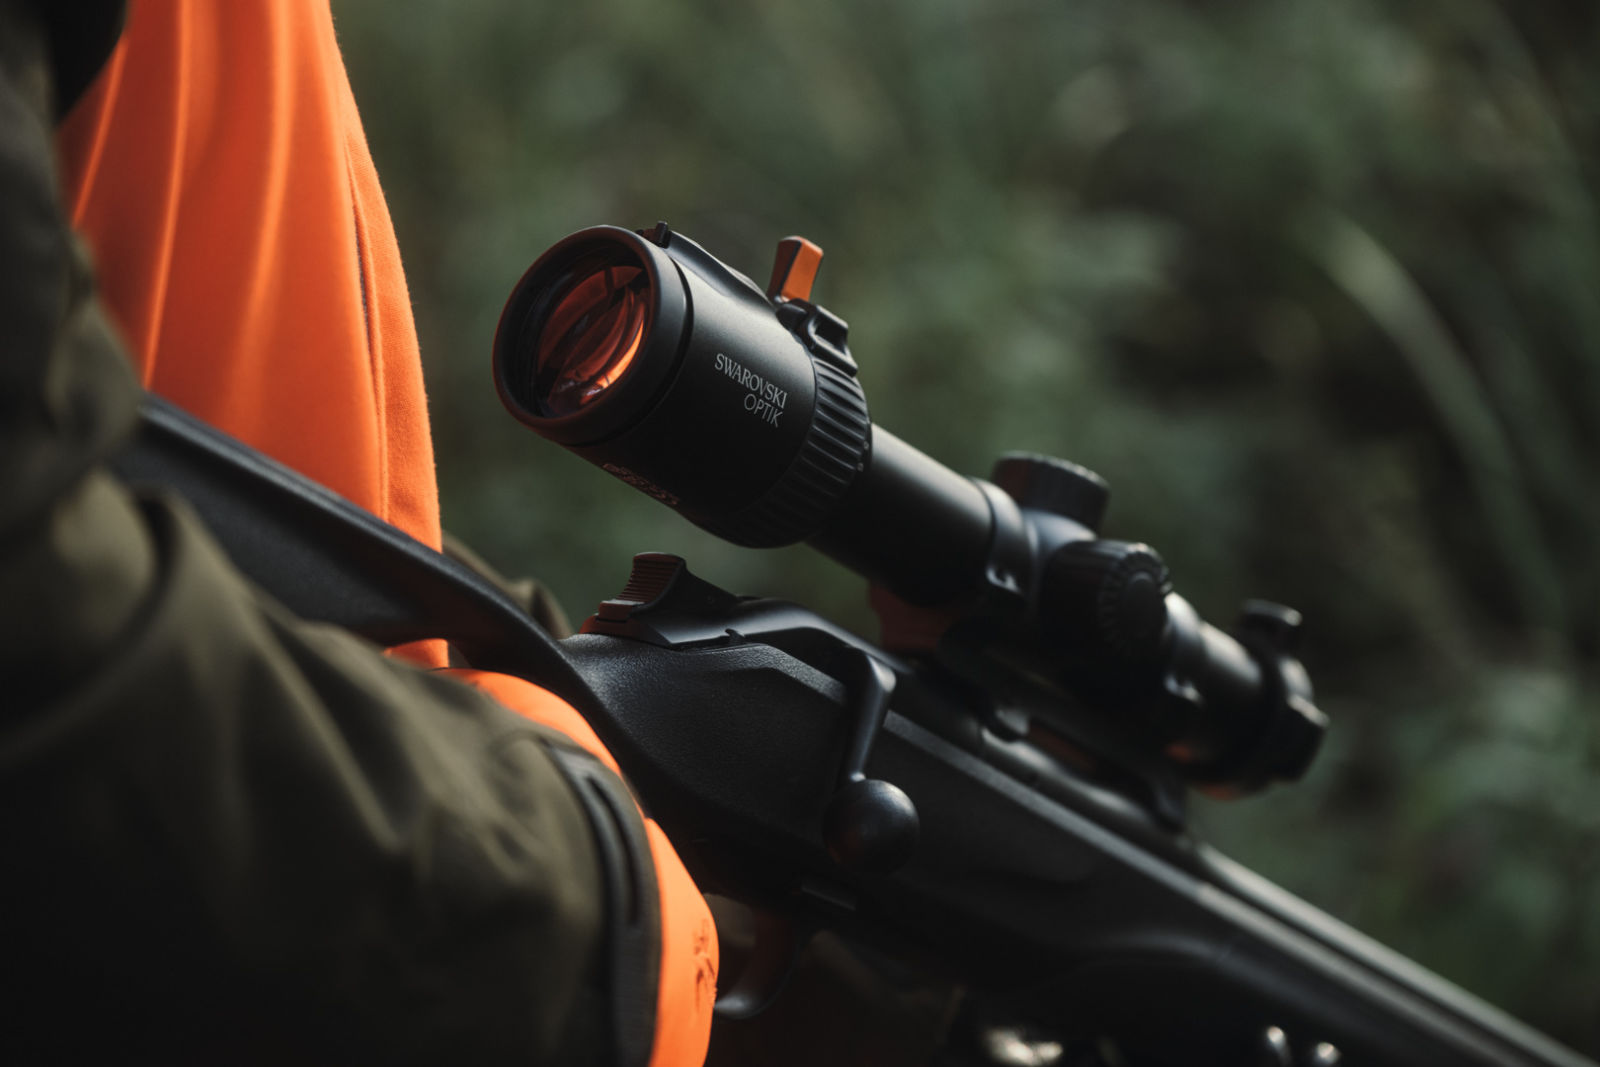 SWAROVSKI OPTIK rifle scopes driven hunt Z8i+